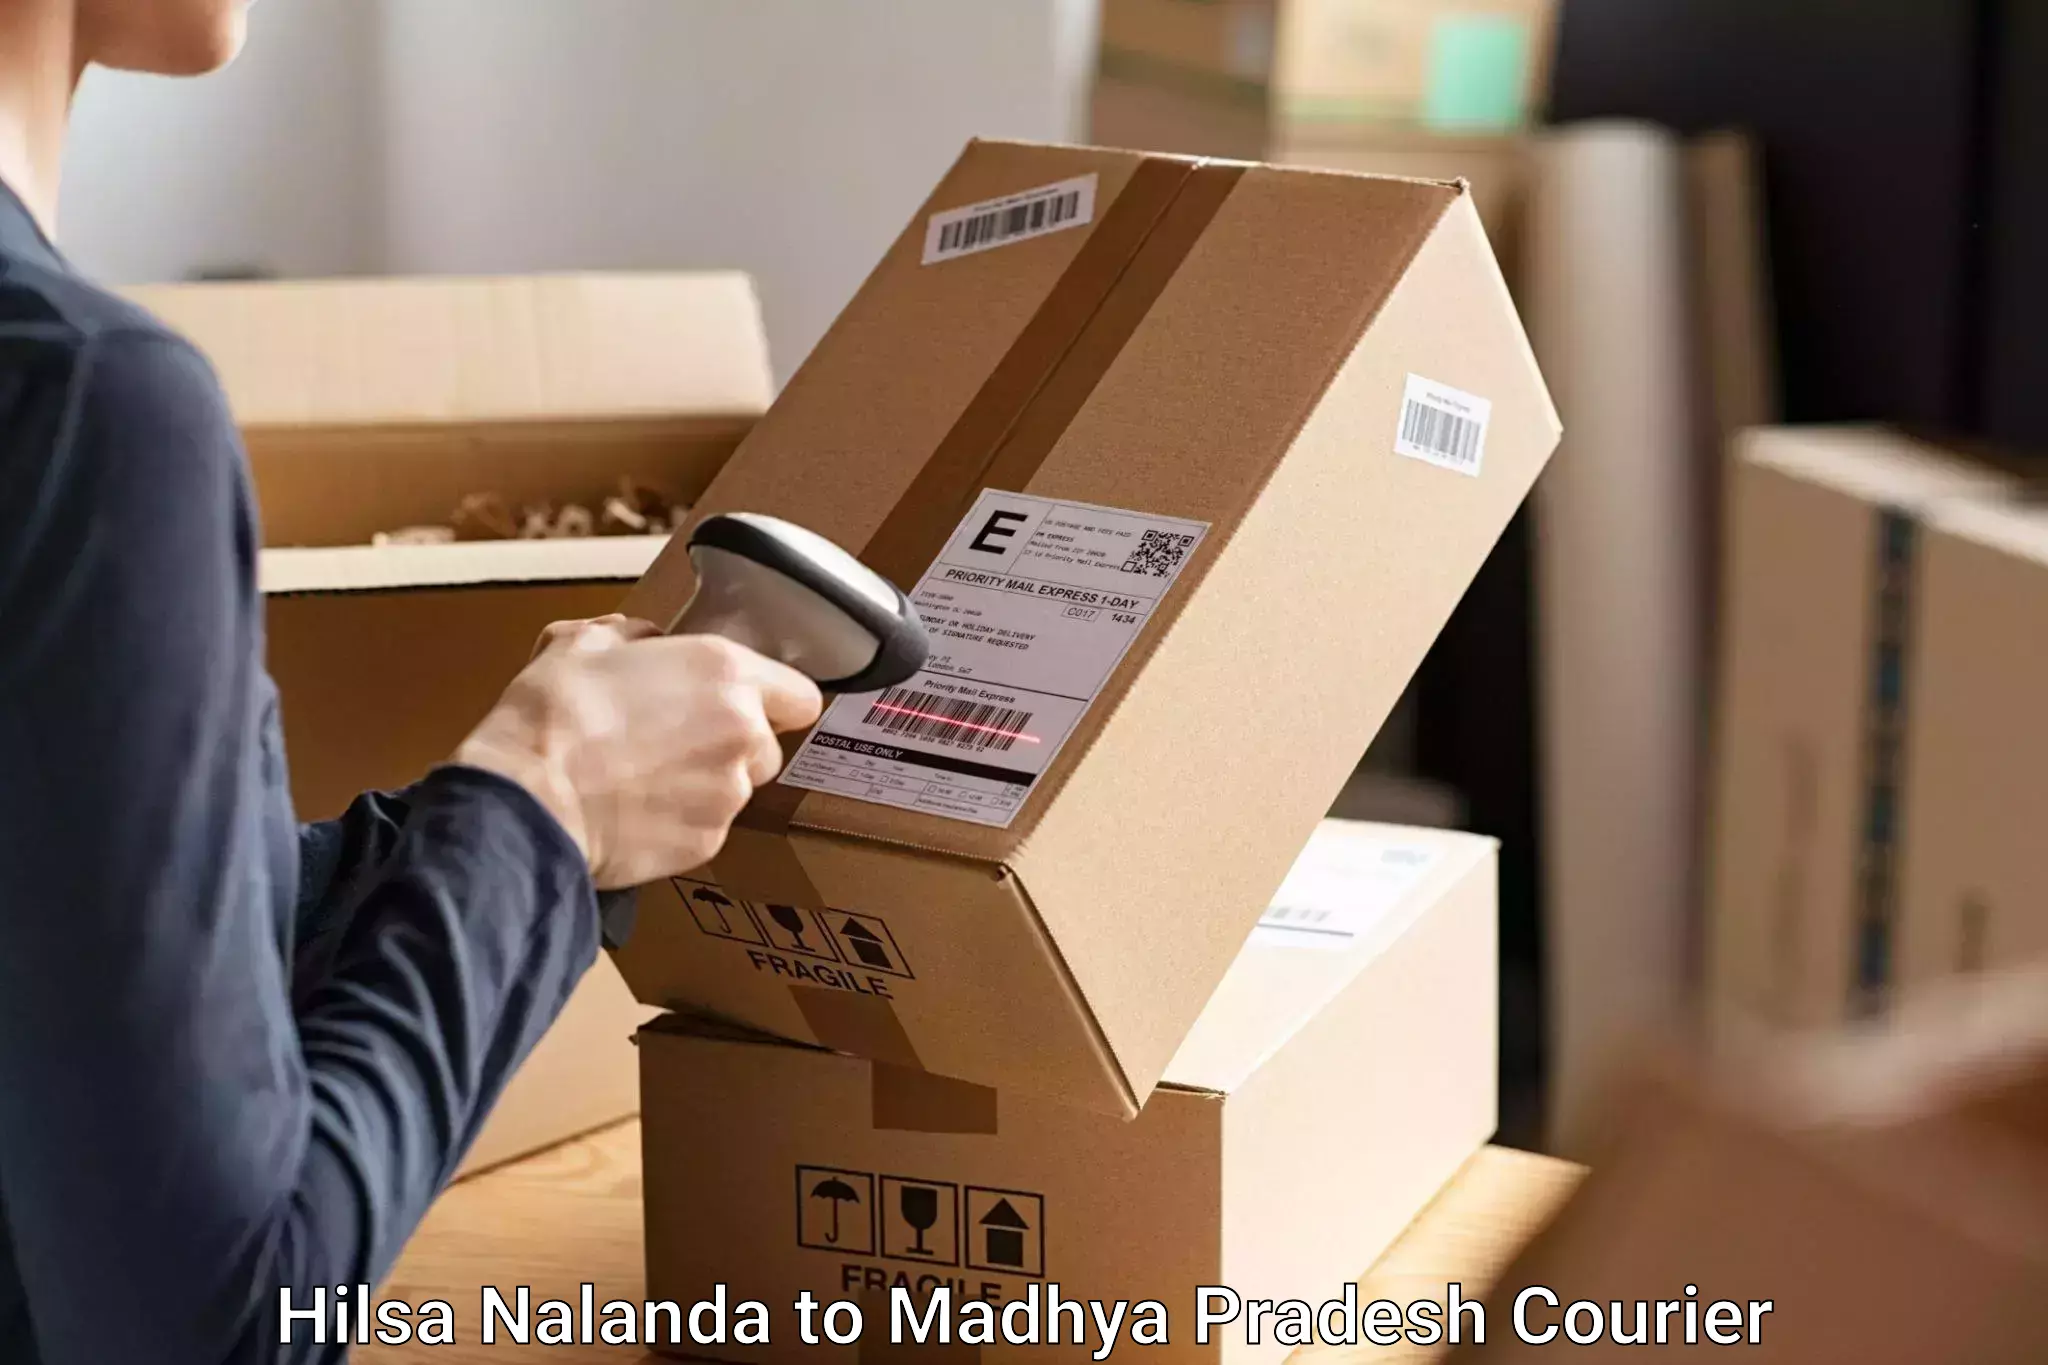 Electronic items luggage shipping Hilsa Nalanda to Nainpur